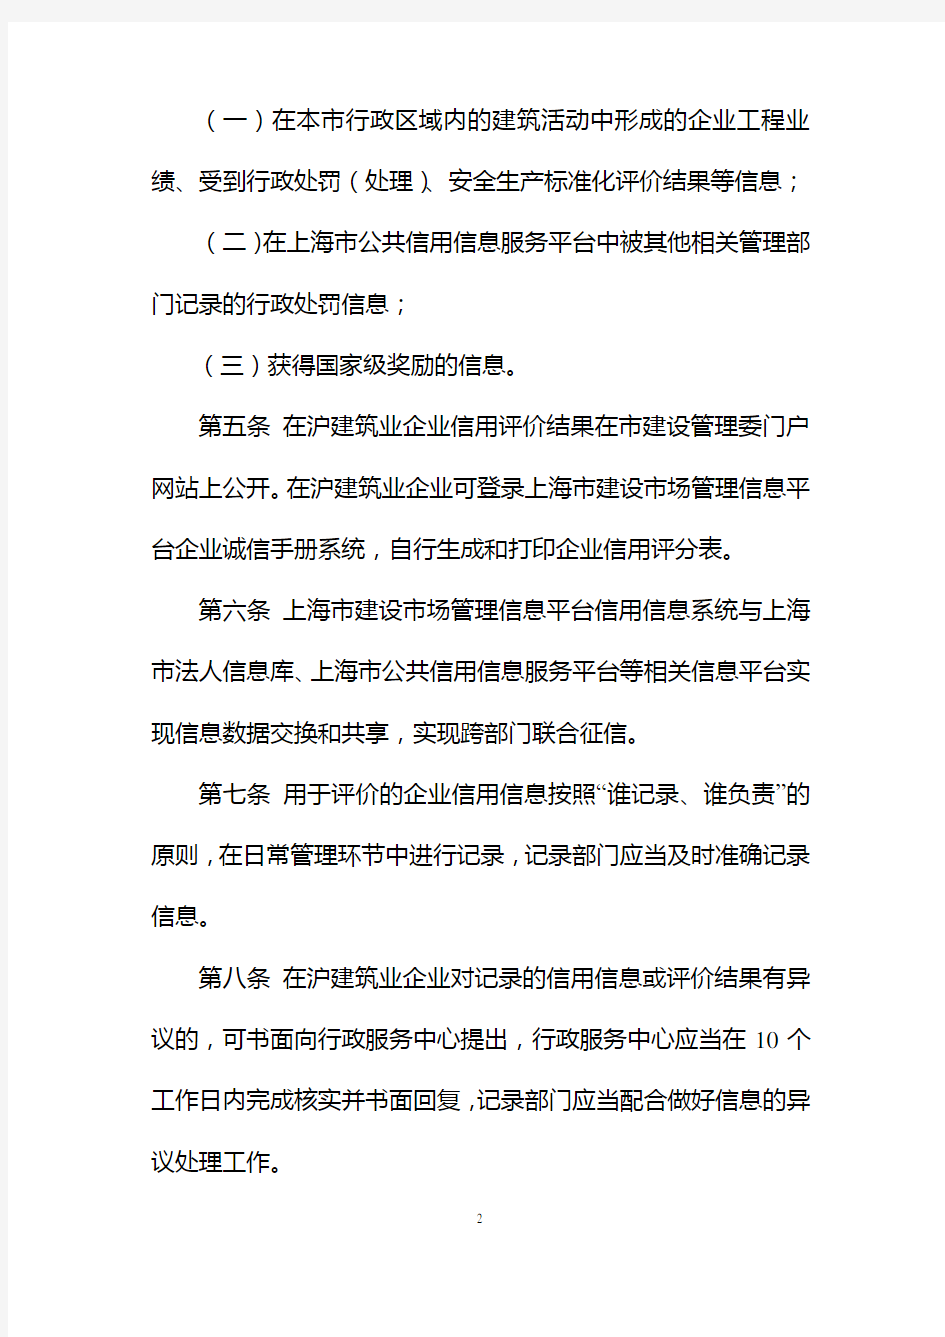 上海在沪建筑业企业信用评价管理暂行办法